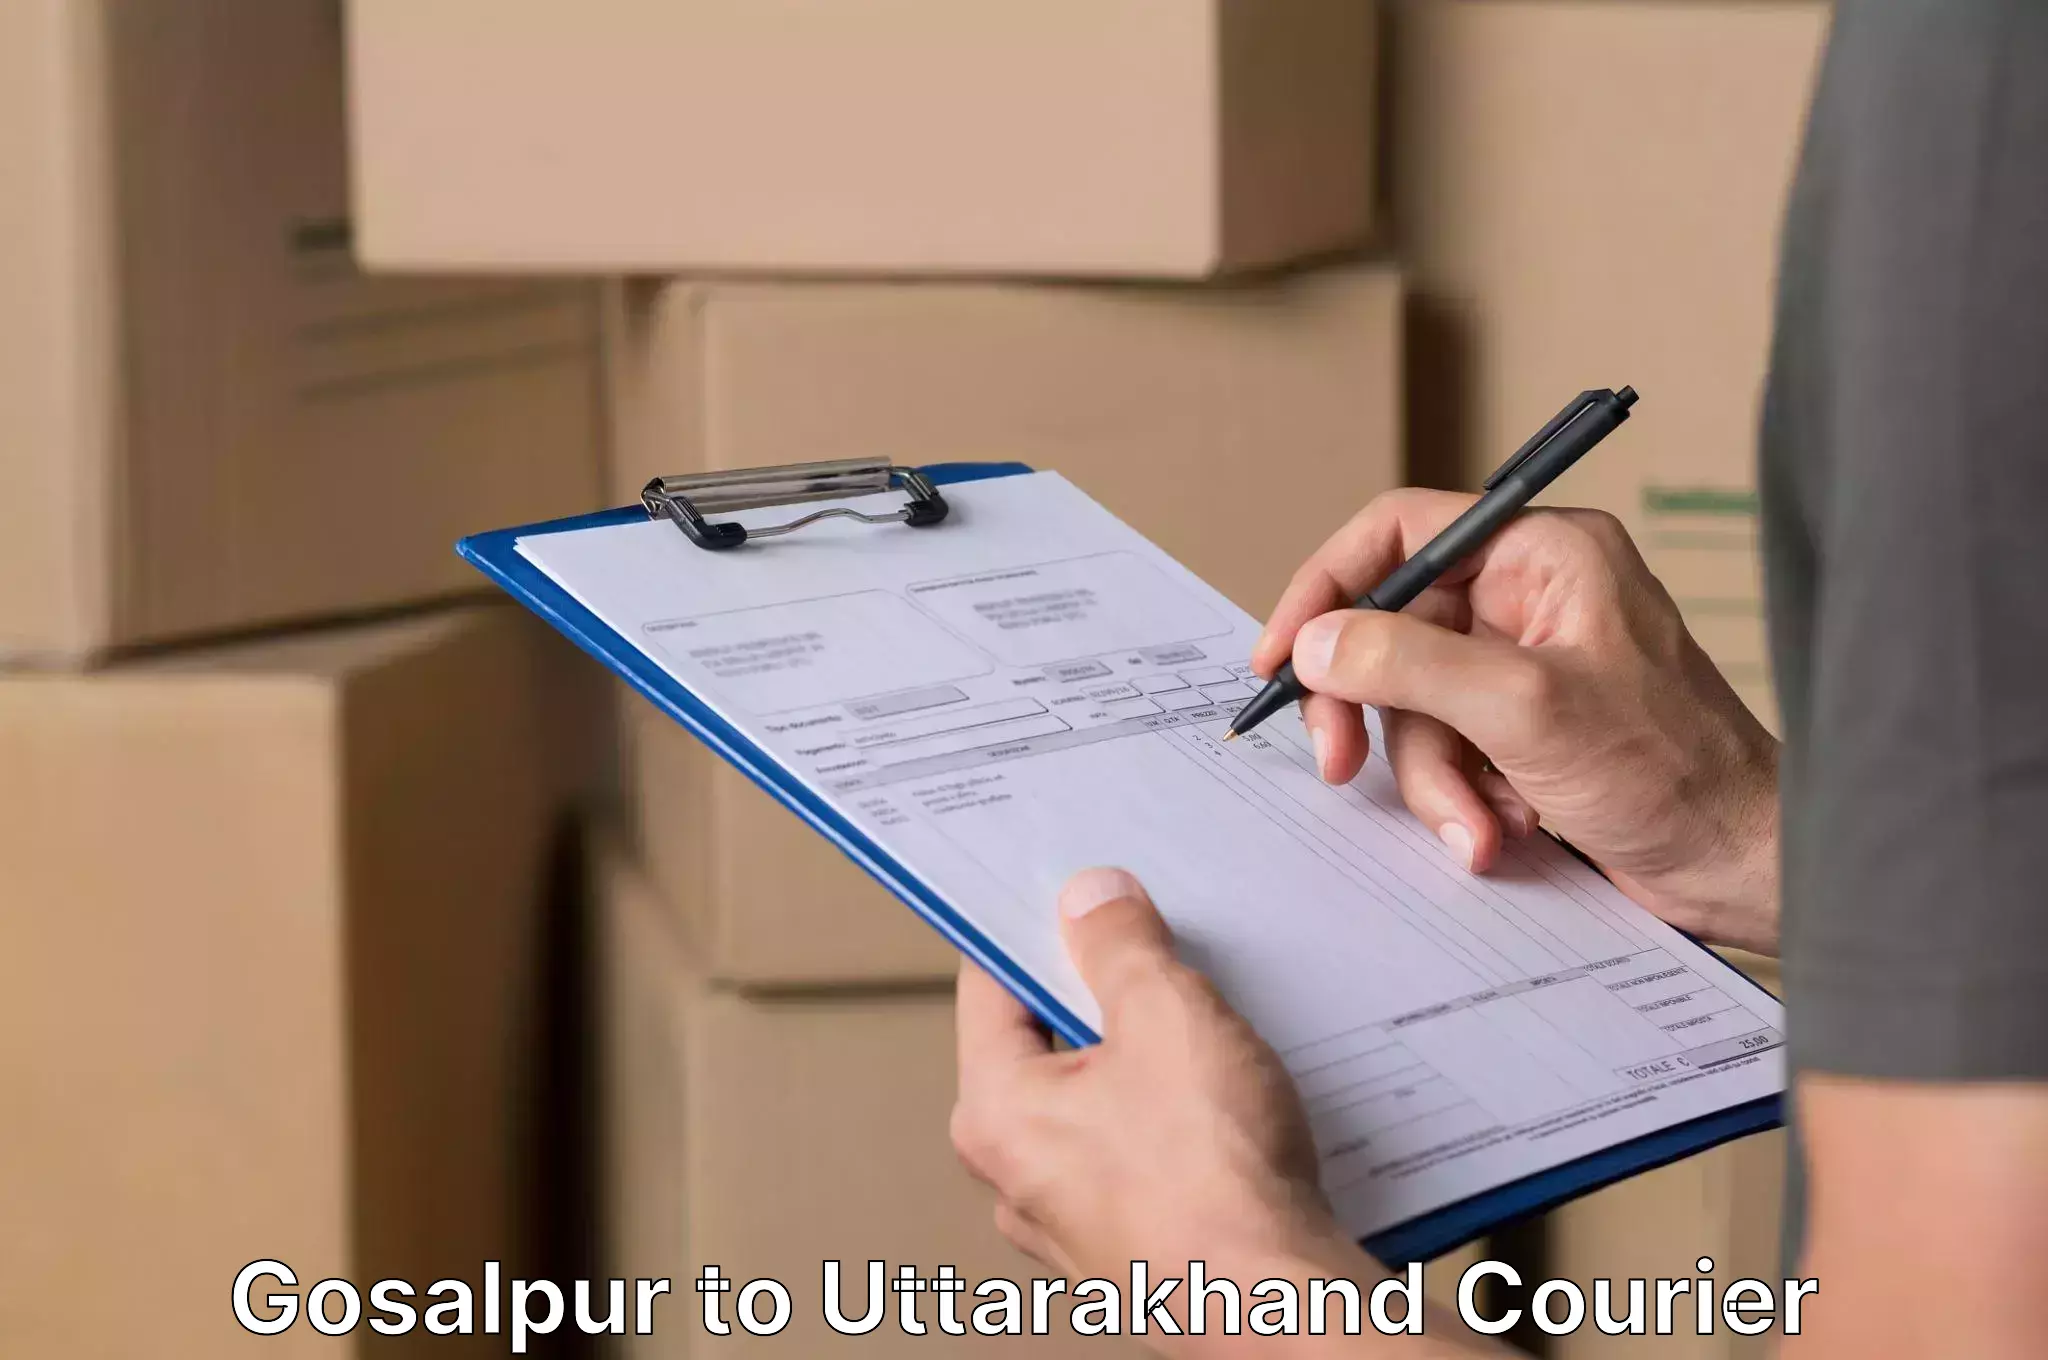 Furniture logistics Gosalpur to Uttarakhand